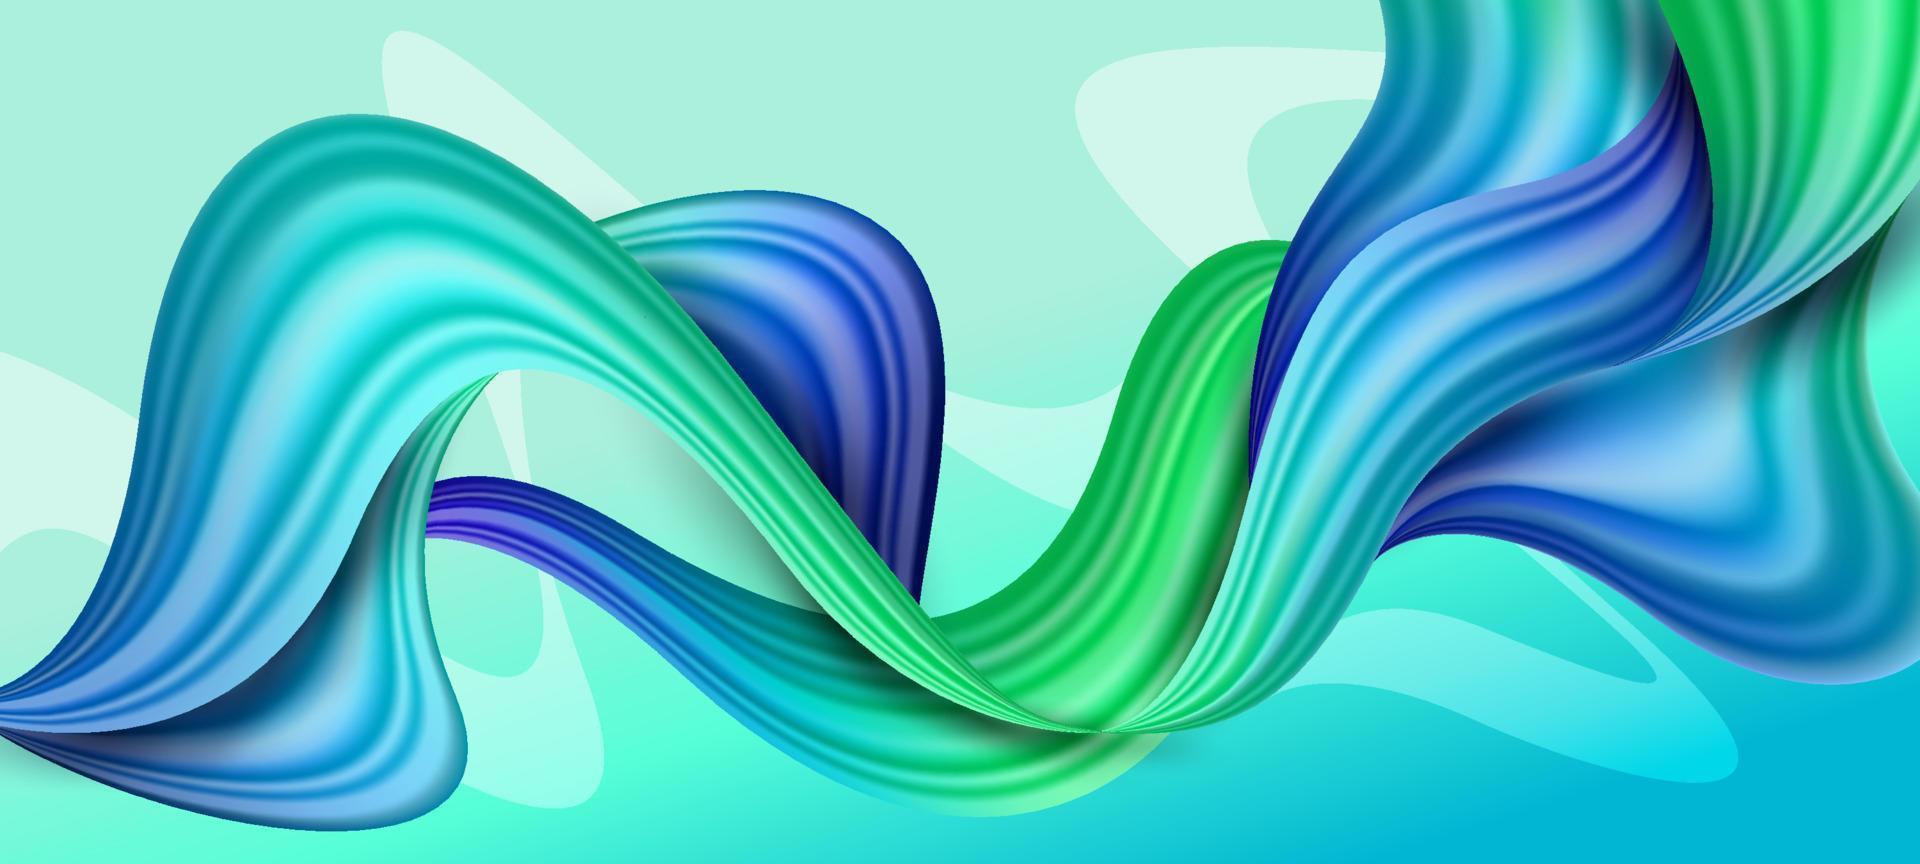 blauer grüner wellenhintergrund vektor